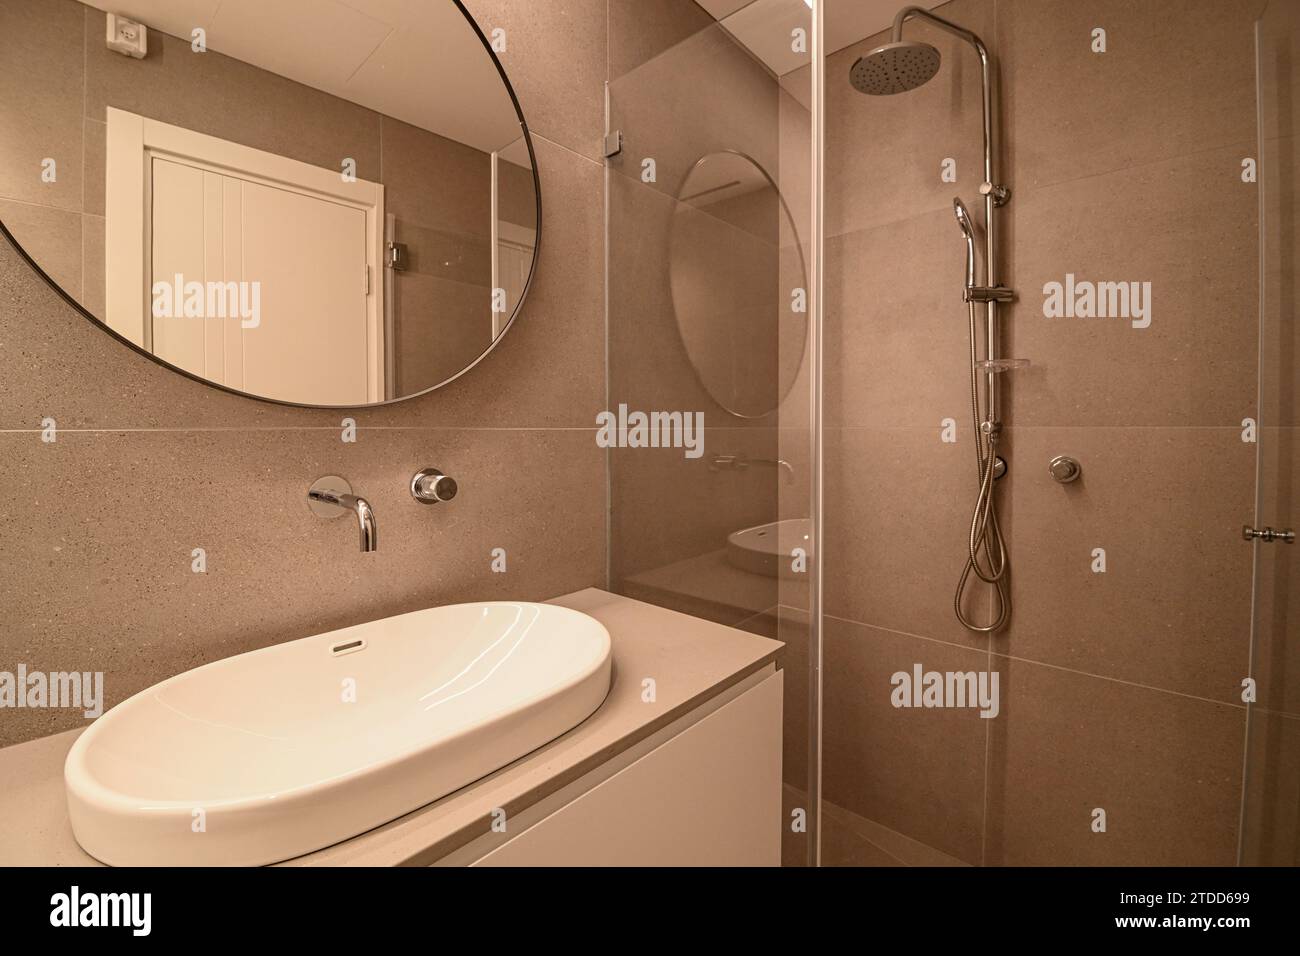 Image haute résolution de design intérieur de salle de bain ultra moderne - HDR - Israël Banque D'Images